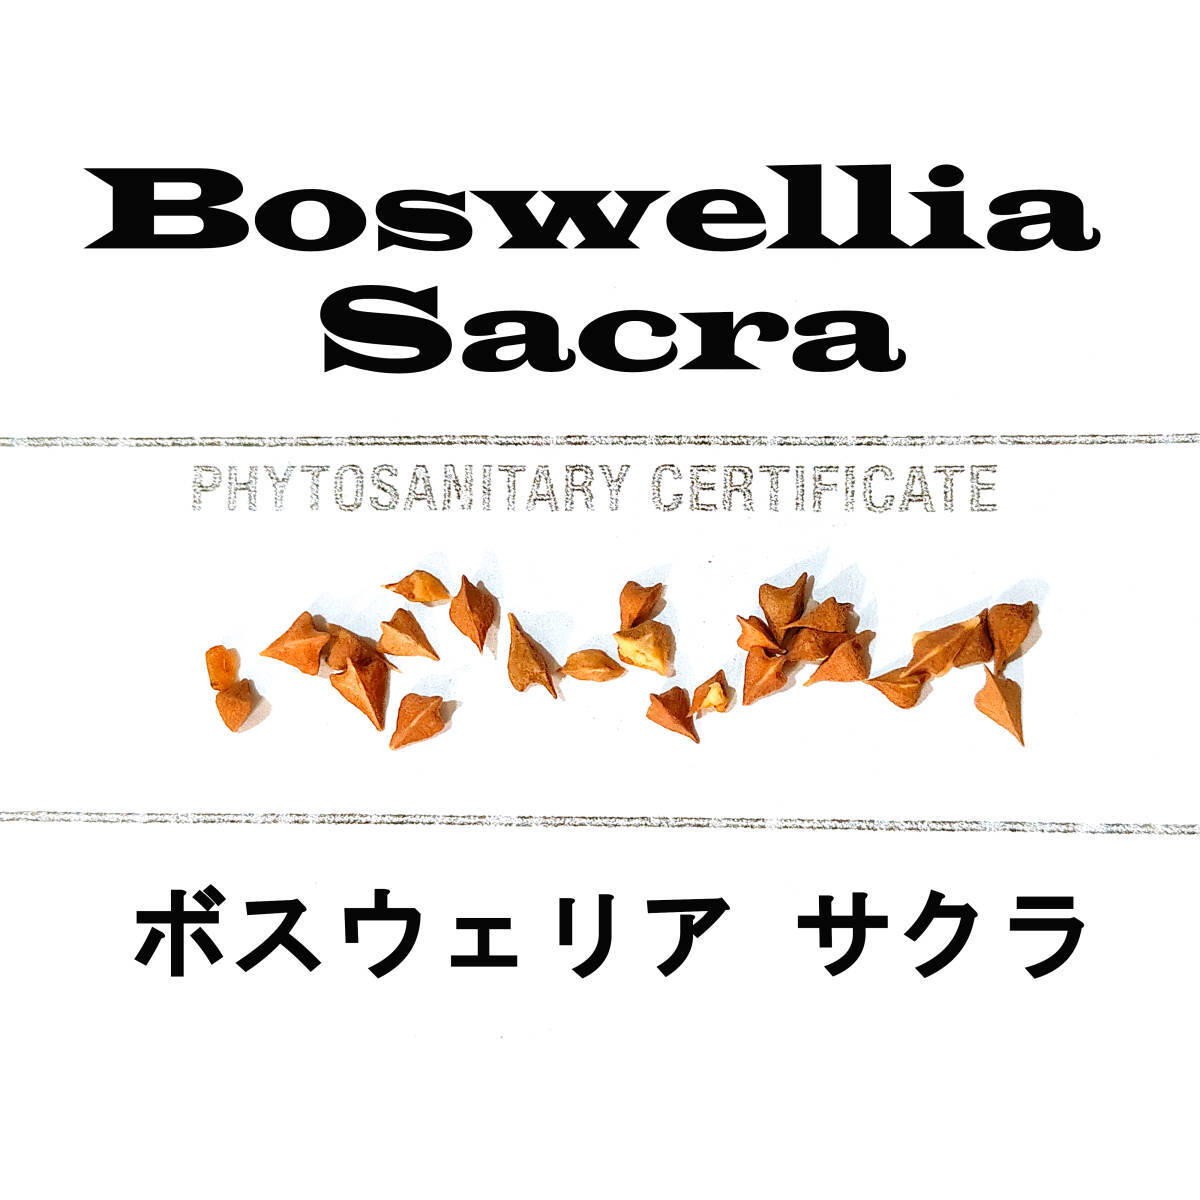 1月入荷 5粒 Boswellia sacra ボスウェリア サクラ 種子 種の画像1